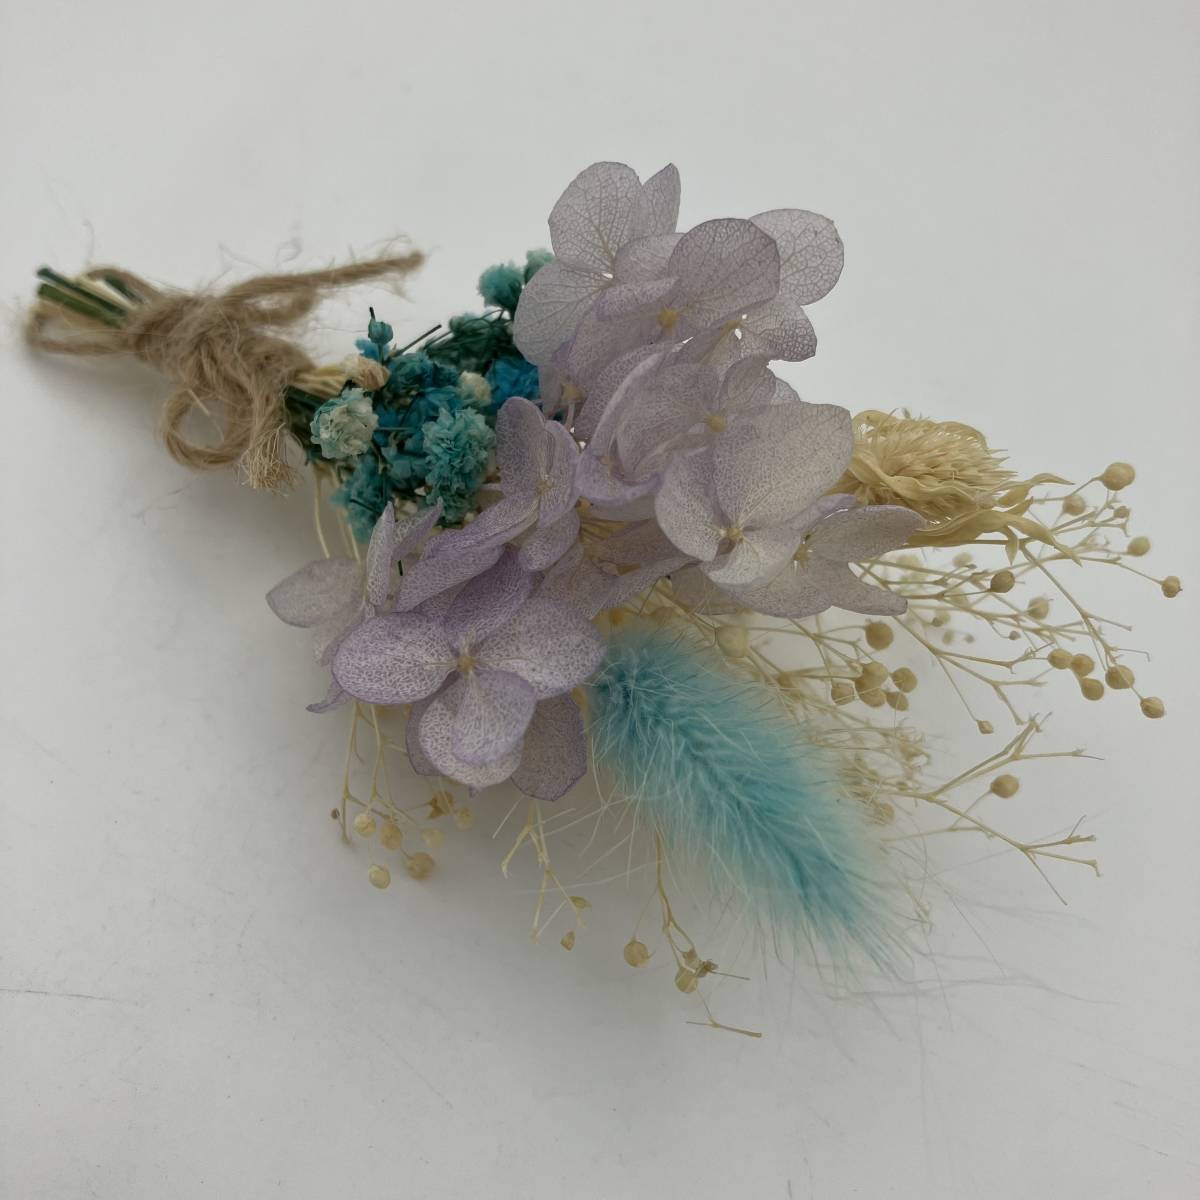  ＜ новый товар ＞... reserve ... цветок   ... ...  цветы  ...  ручной работы    гортензия      ...  фиолетовый    синий   гобелен    украшение      ...     поздравление   подарок   подарок 